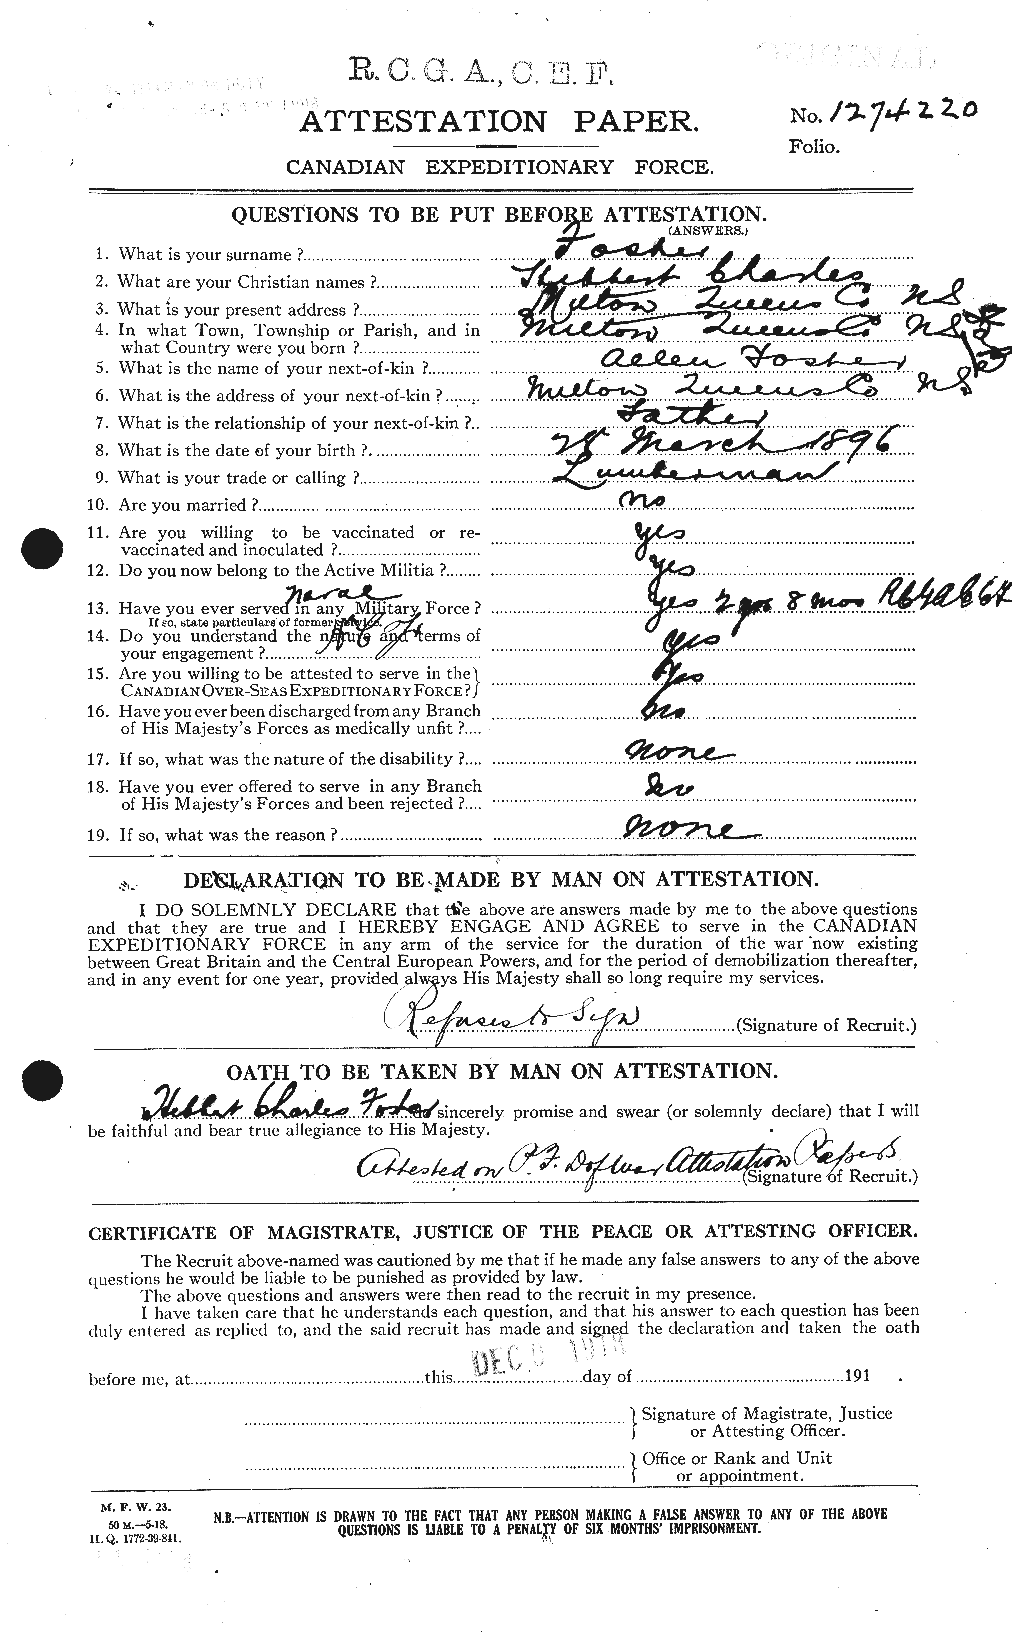 Dossiers du Personnel de la Première Guerre mondiale - CEC 333256a